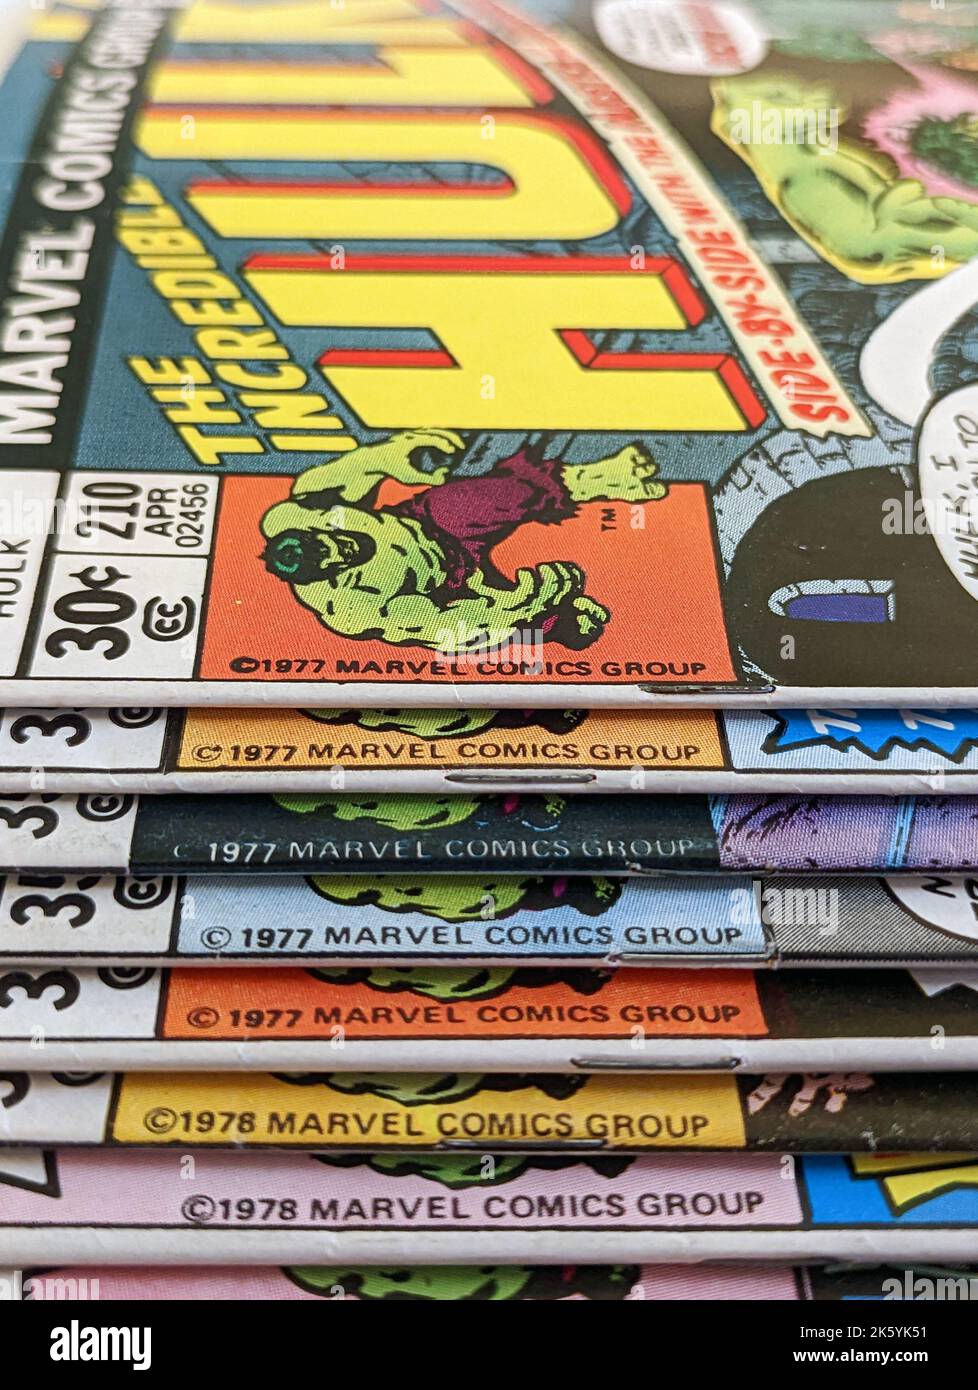 New York City, USA - Oktober 2022: Ein Stapel alter unglaublicher Hulk-Comicbücher, die als Teil einer alten Marvel Comics-Kollektion von 1970s verkauft wurden Stockfoto